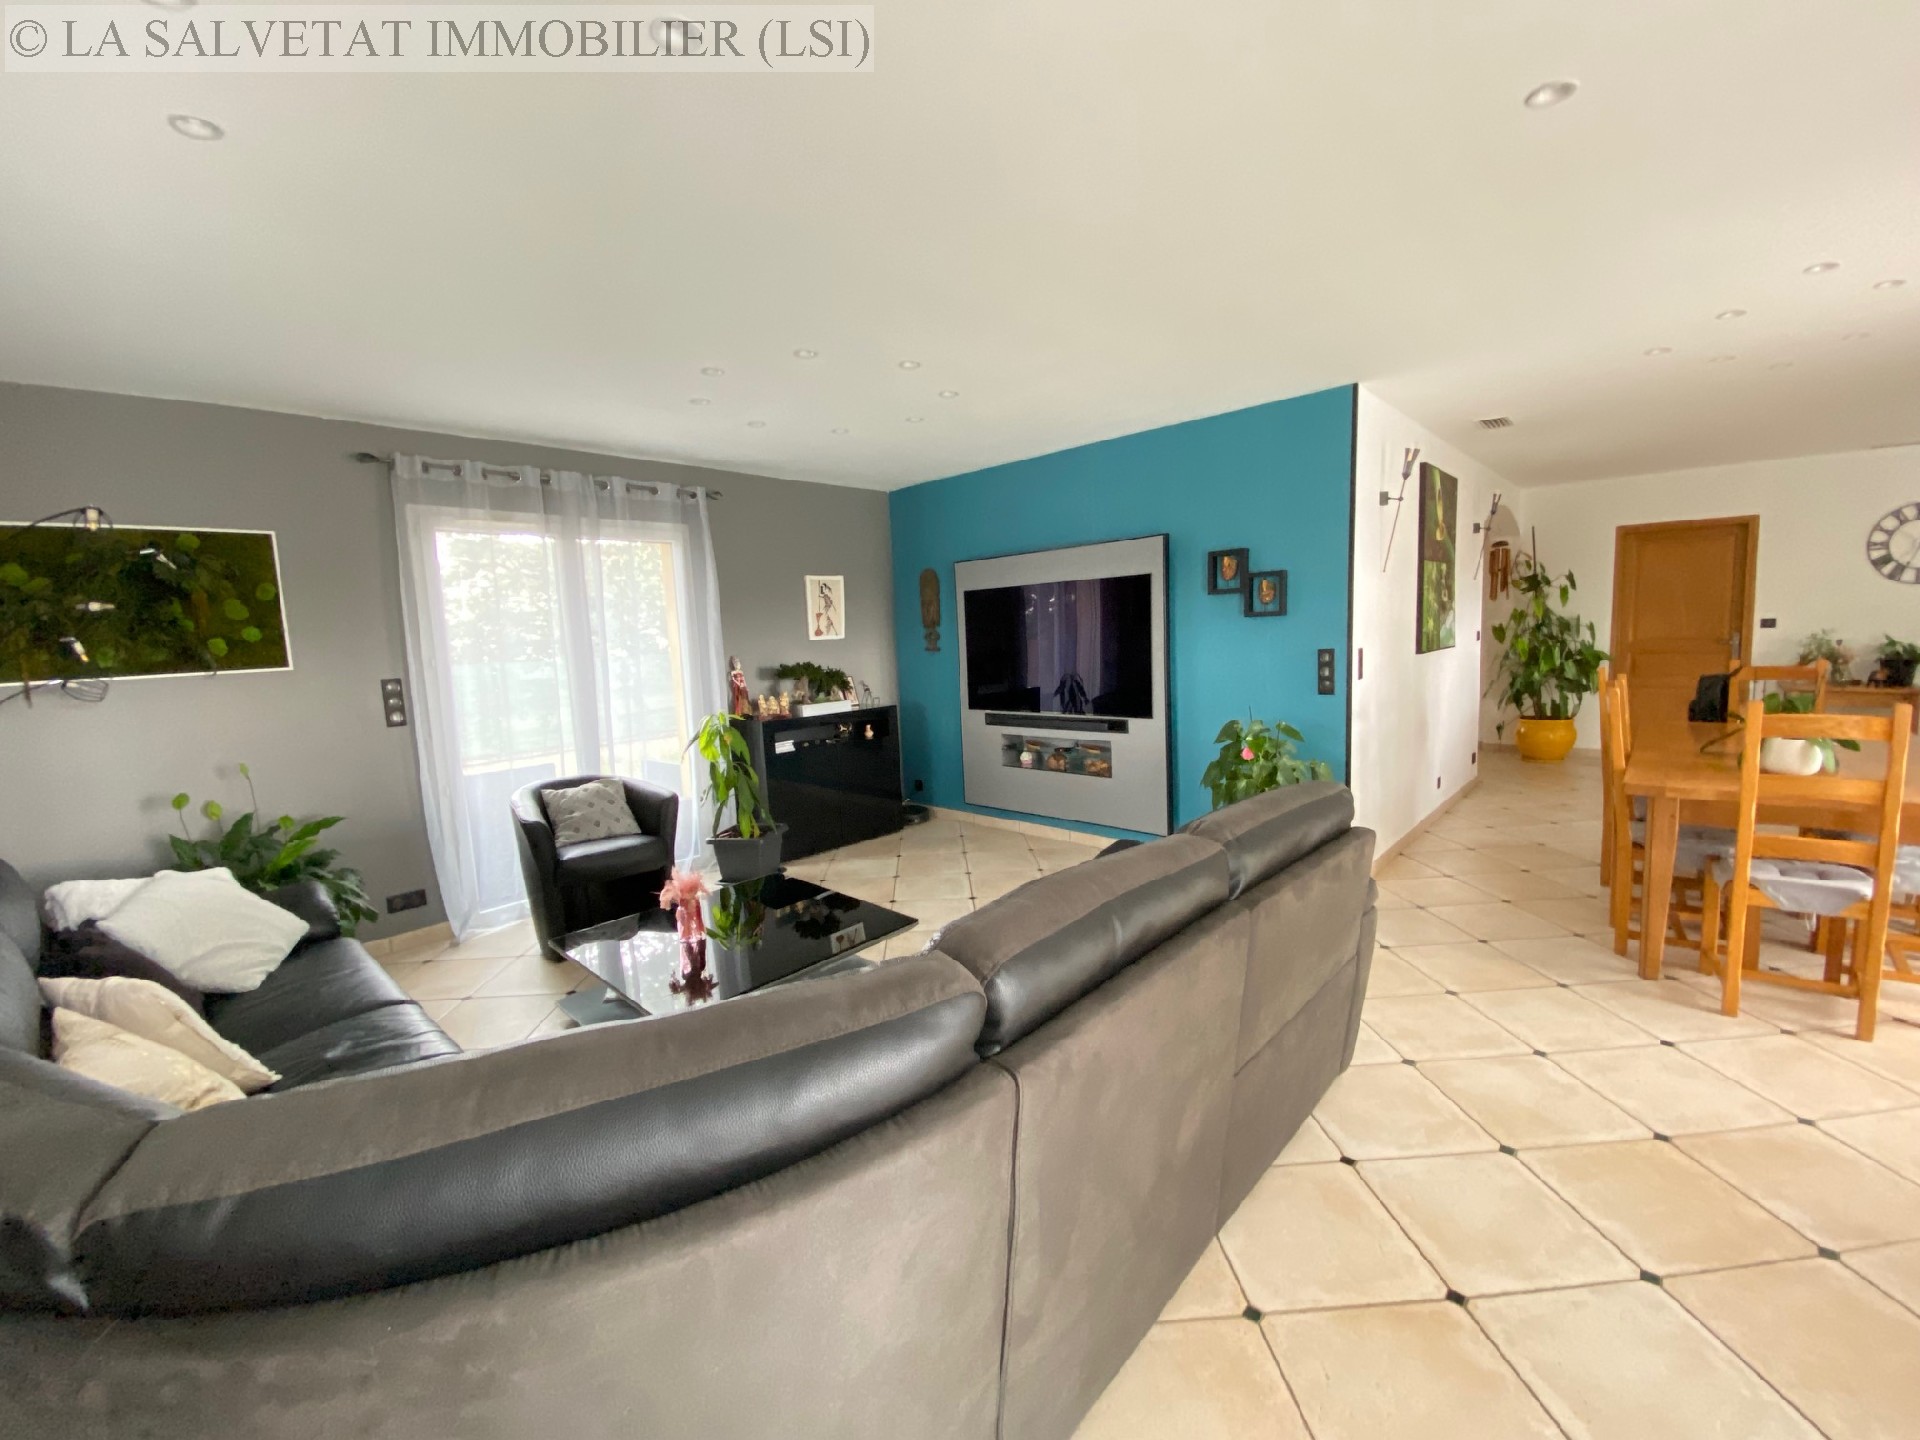 Vente maison-villa - LIAS<br>156 m², 5 pièces